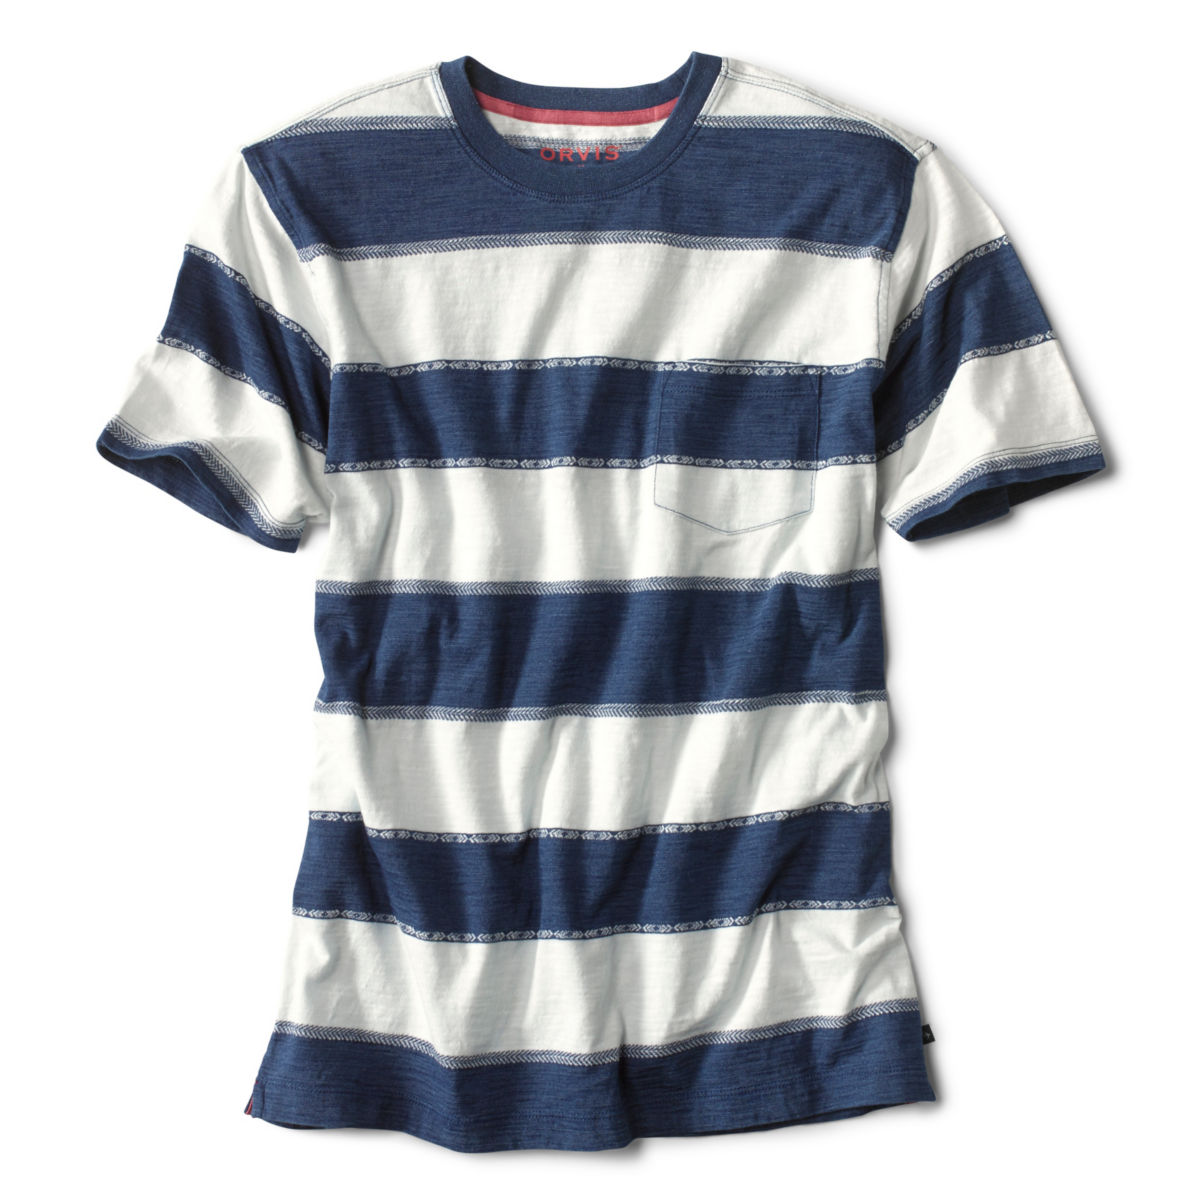 Indigo Striped Jacquard Short-Sleeved T-Shirt - BLUE/WHITEimage number 0